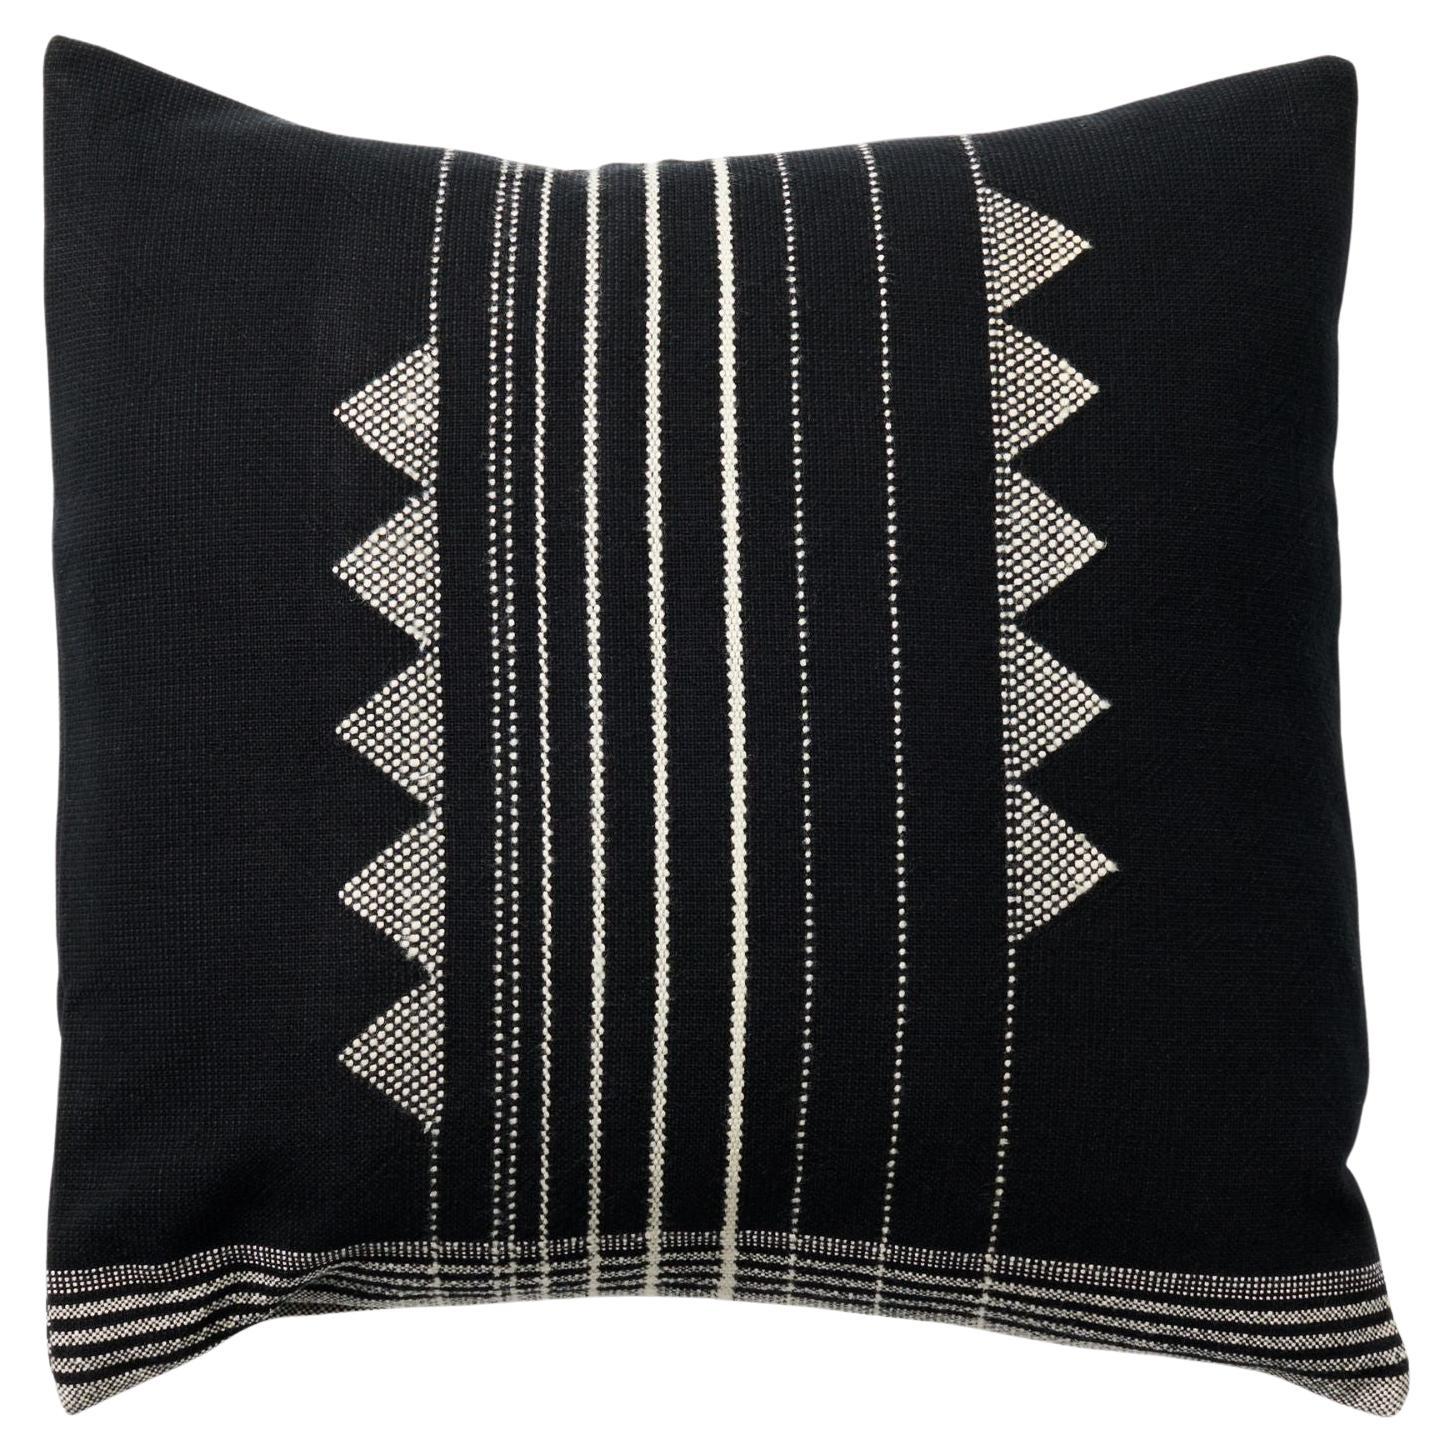 Kora Schwarzes, handgewebtes, großes Kissen aus Seidenwoll-Baumwollmischung in Schwarz und Weiß